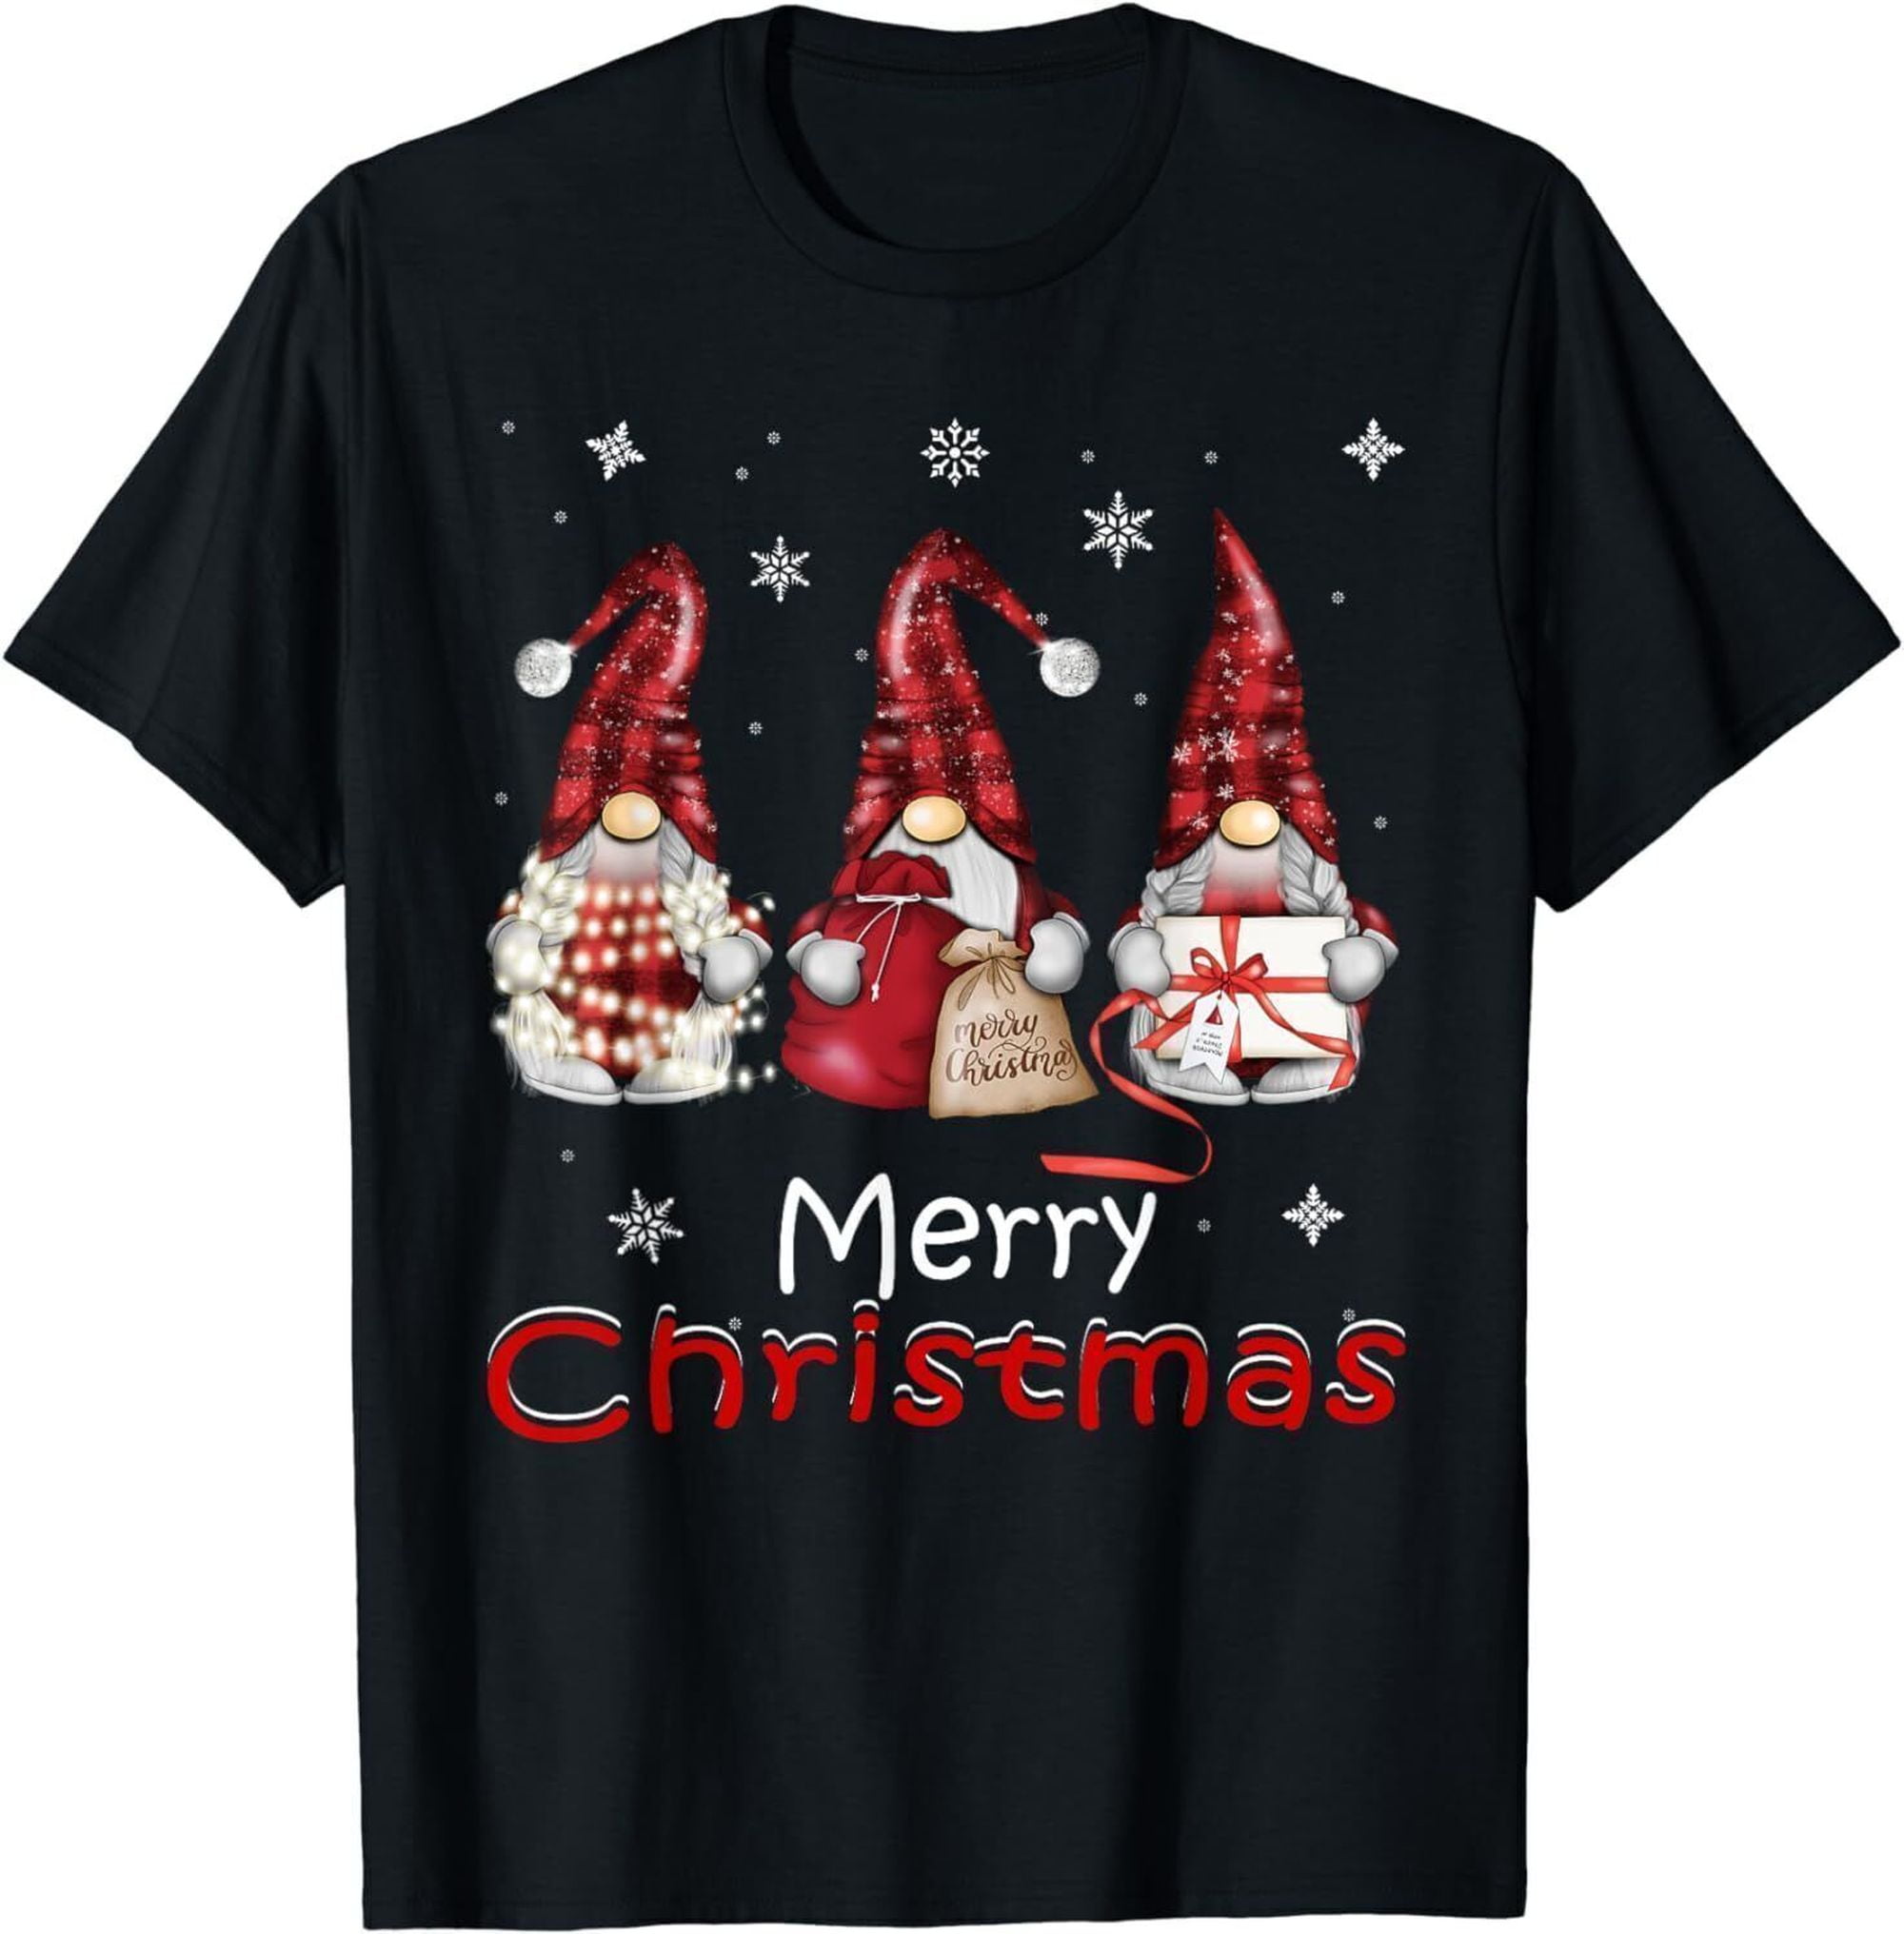 Buffalo Plaid Gnome Family Christmas Shirts - Festive Apparel for Women ...